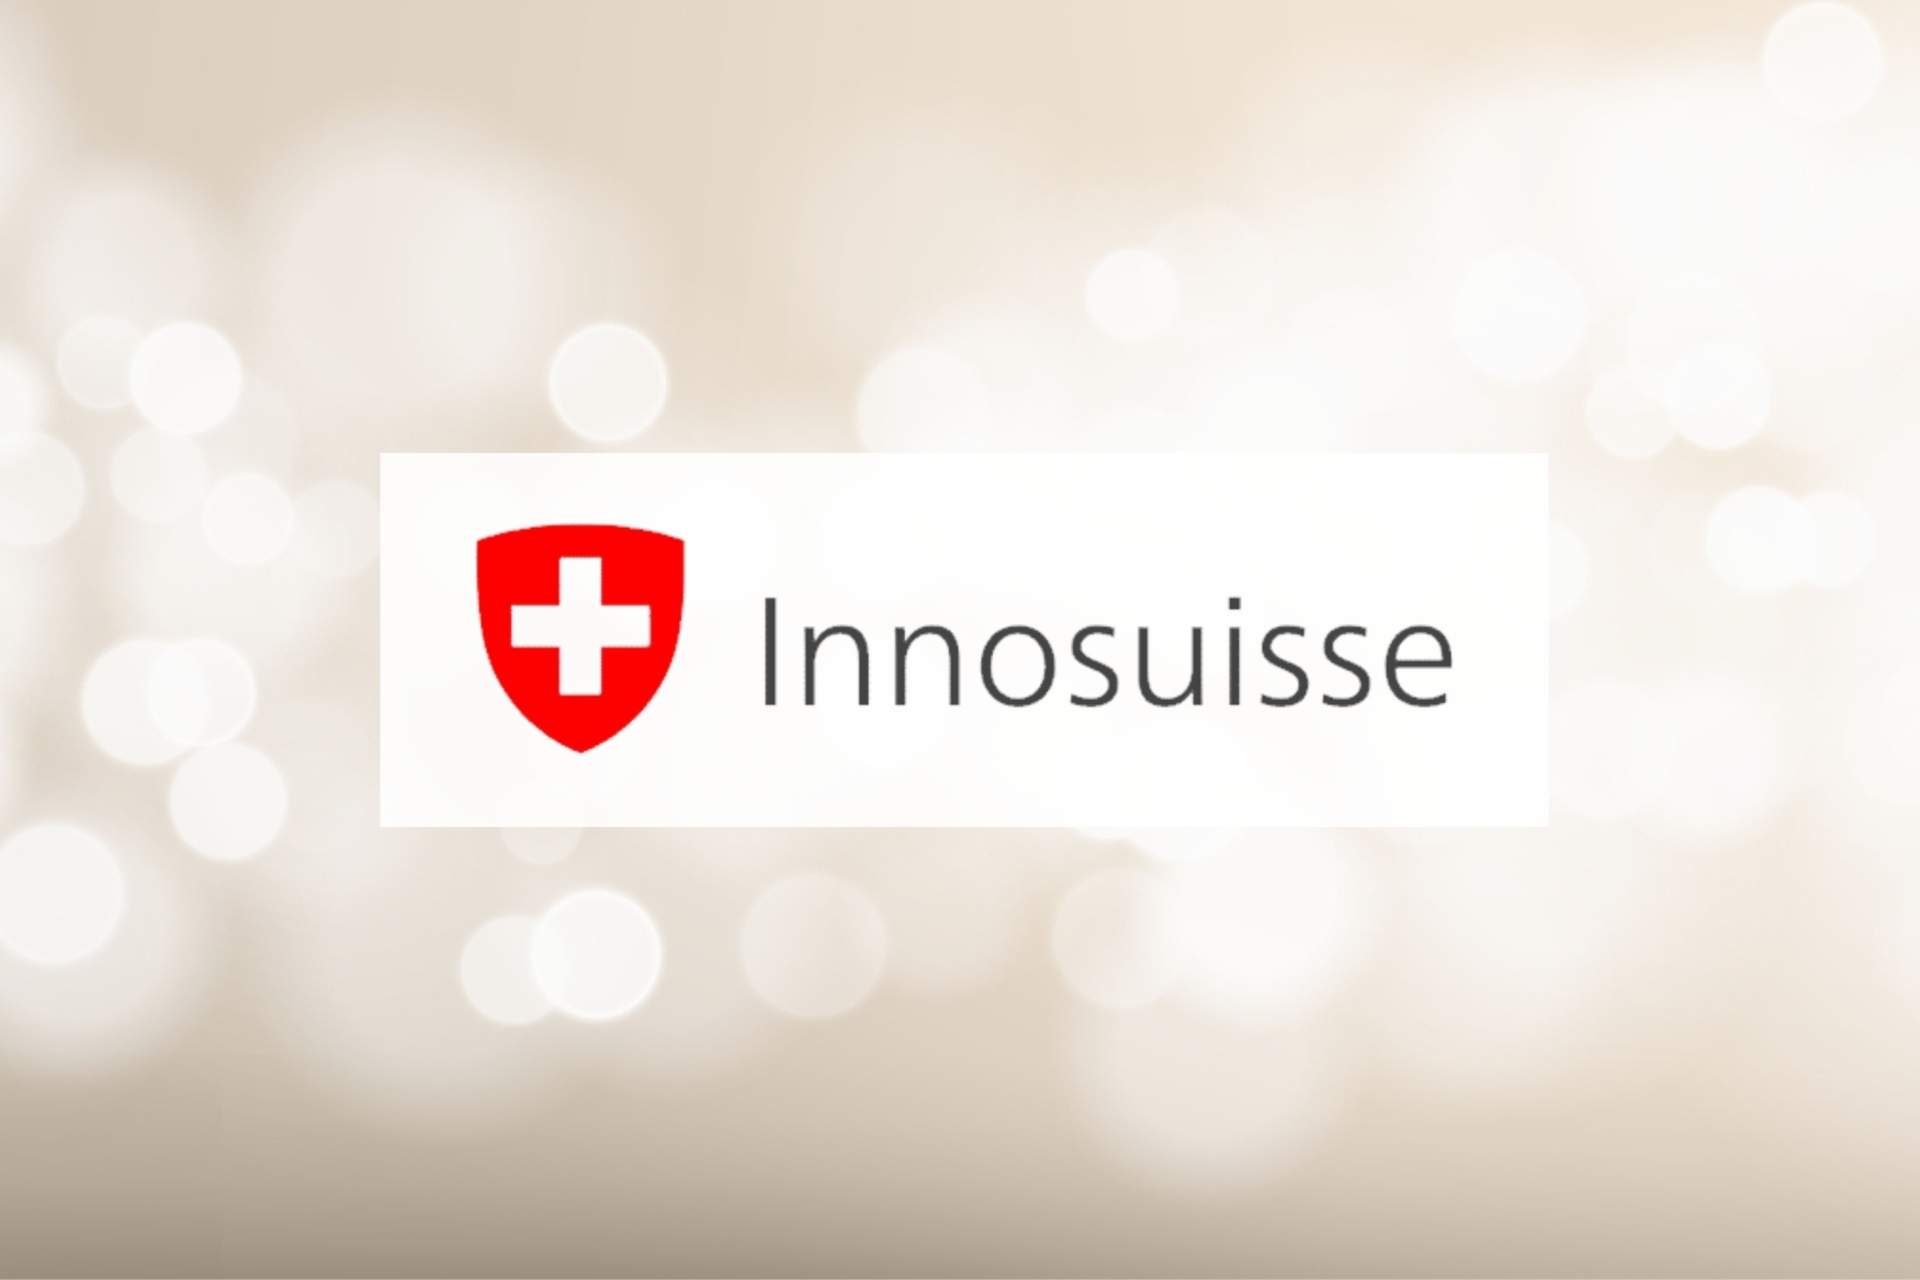 Innosisse: Švýcarská agentura pro podporu inovací